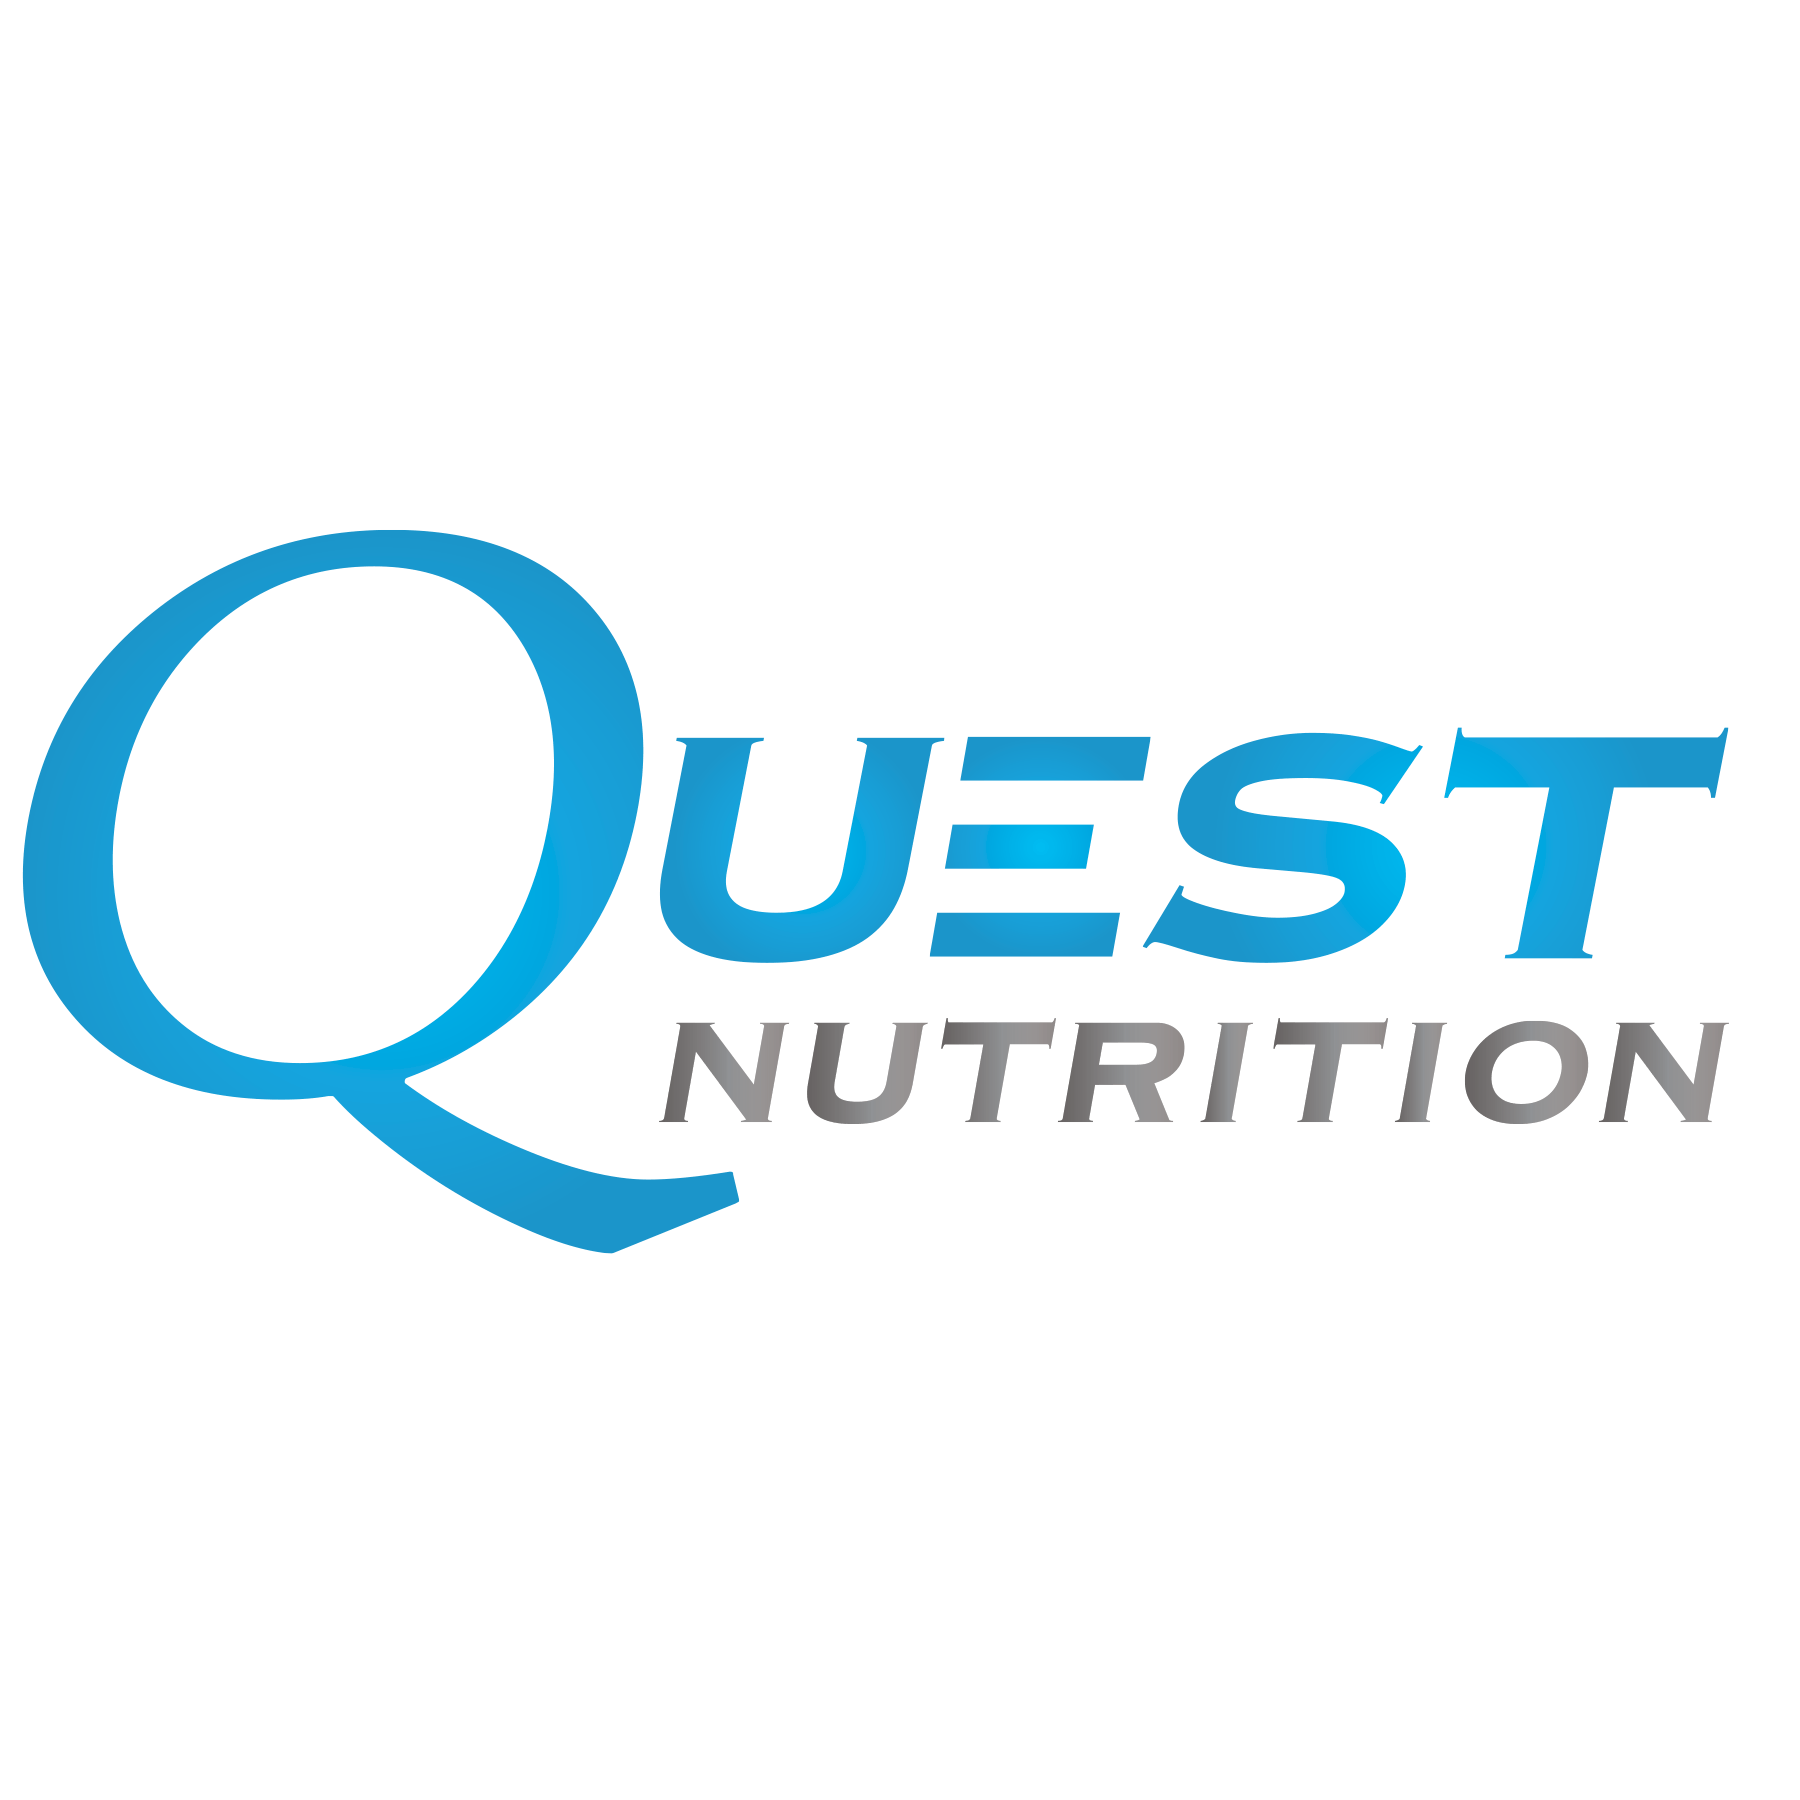 Quest Logo - Quest Nutrition - Muscle Worx Australia